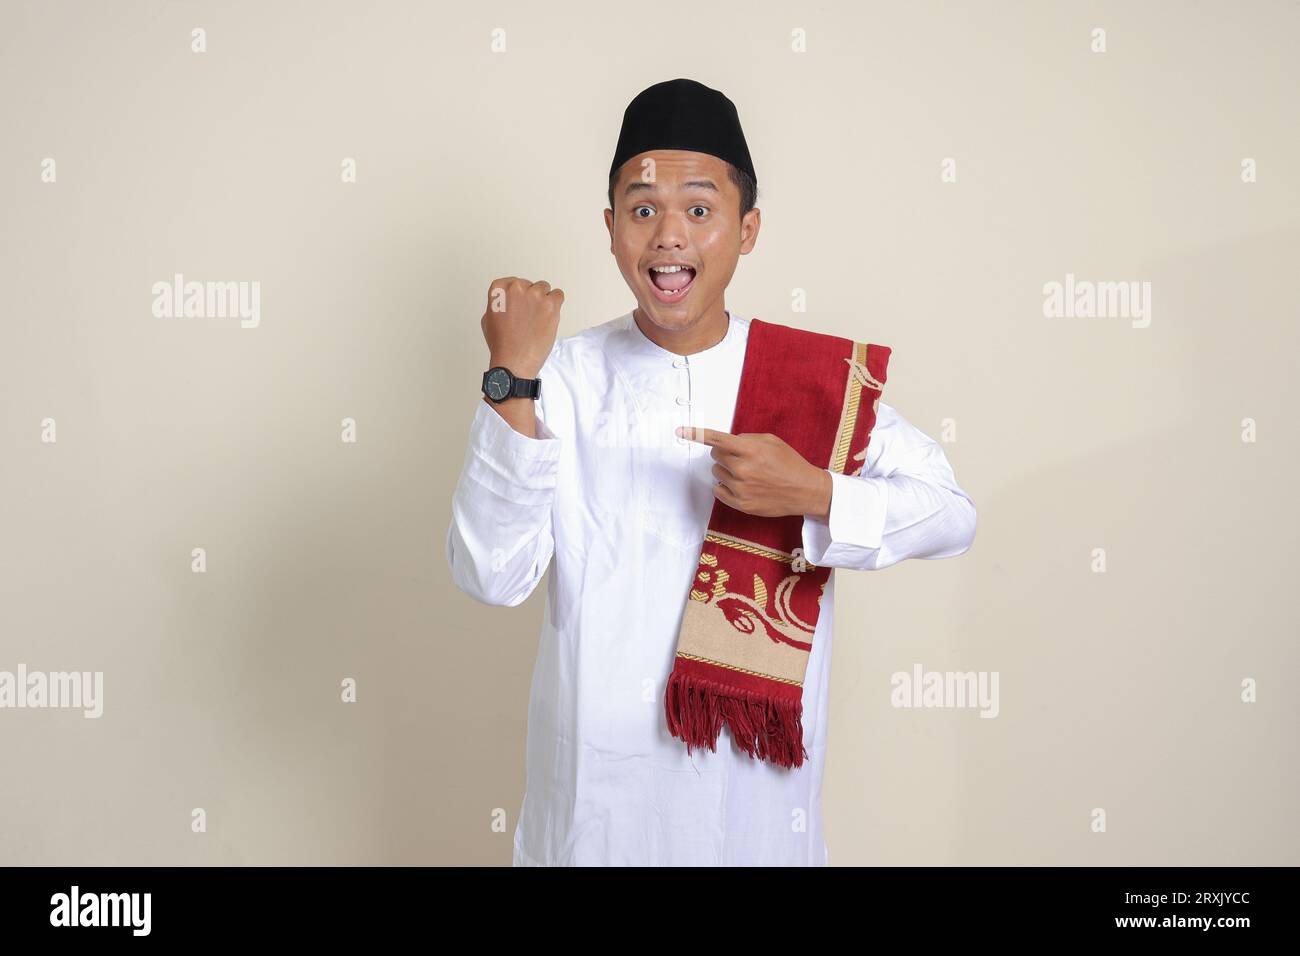 Ritratto di un attraente uomo musulmano asiatico in camicia bianca che guarda l'orologio da polso whille che punta con il dito. Immagine isolata su sfondo grigio Foto Stock